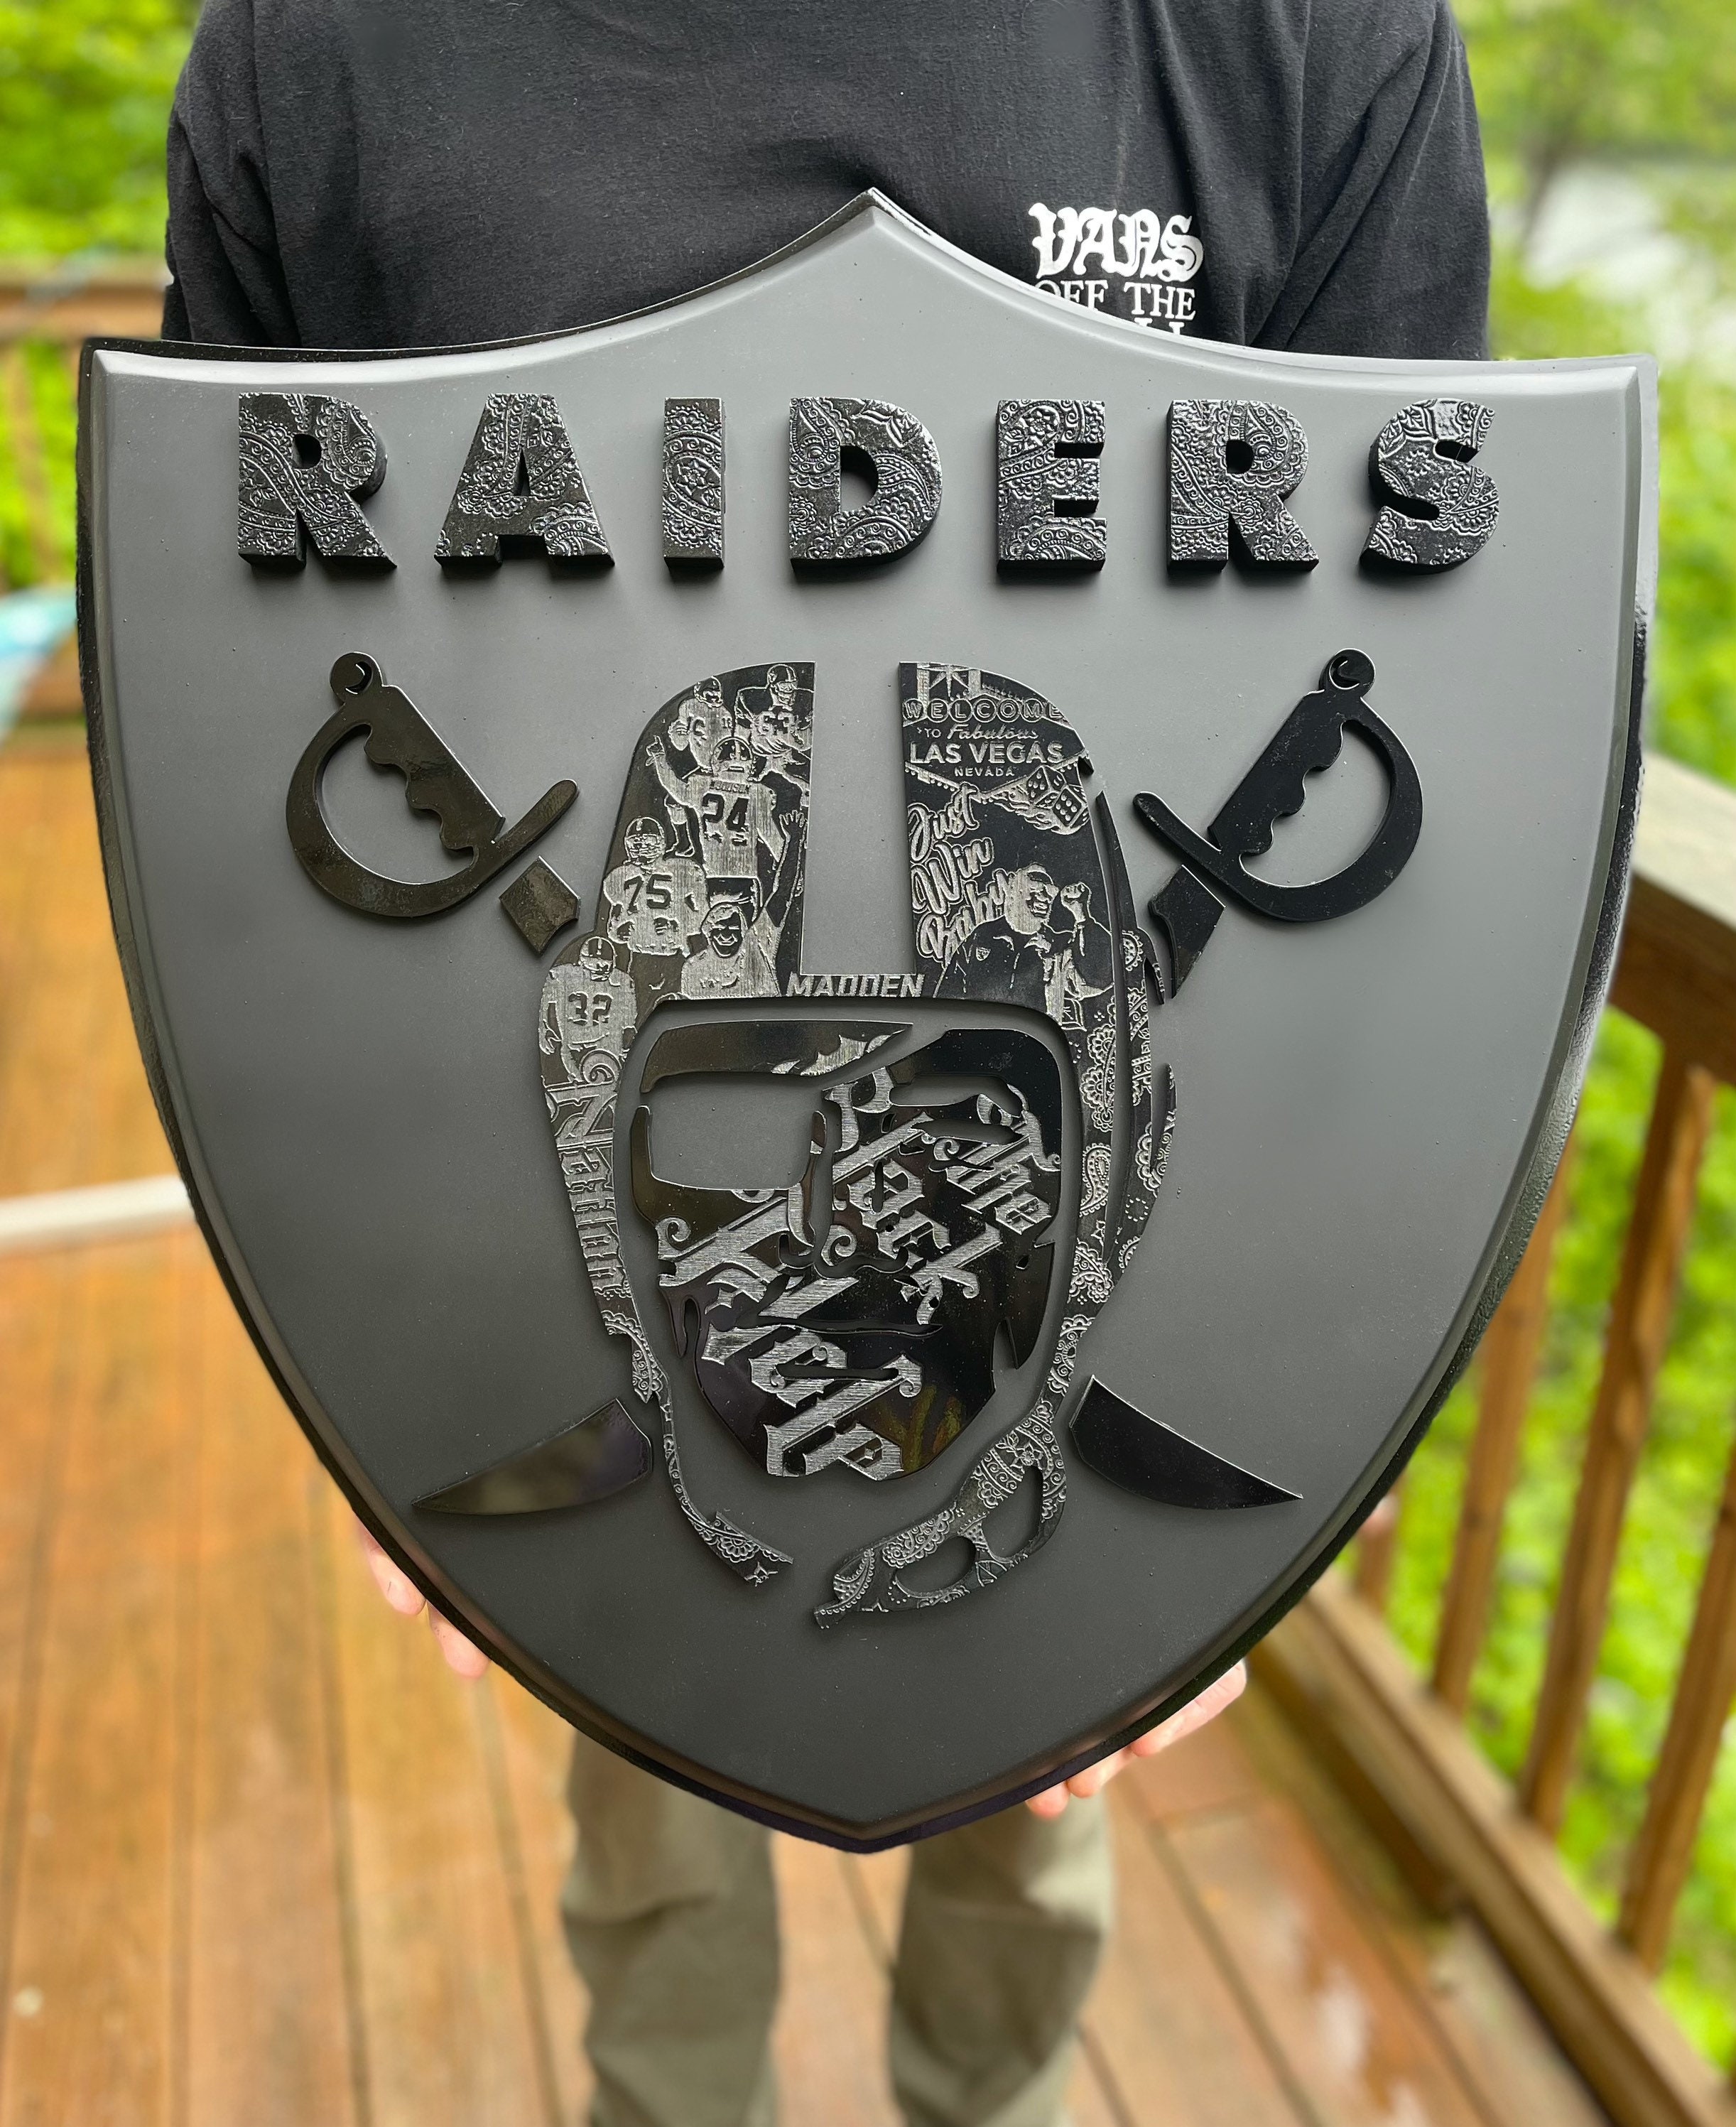 Las Vegas Raiders Sign Raiders 3d Wood Sign Raiders Skull 